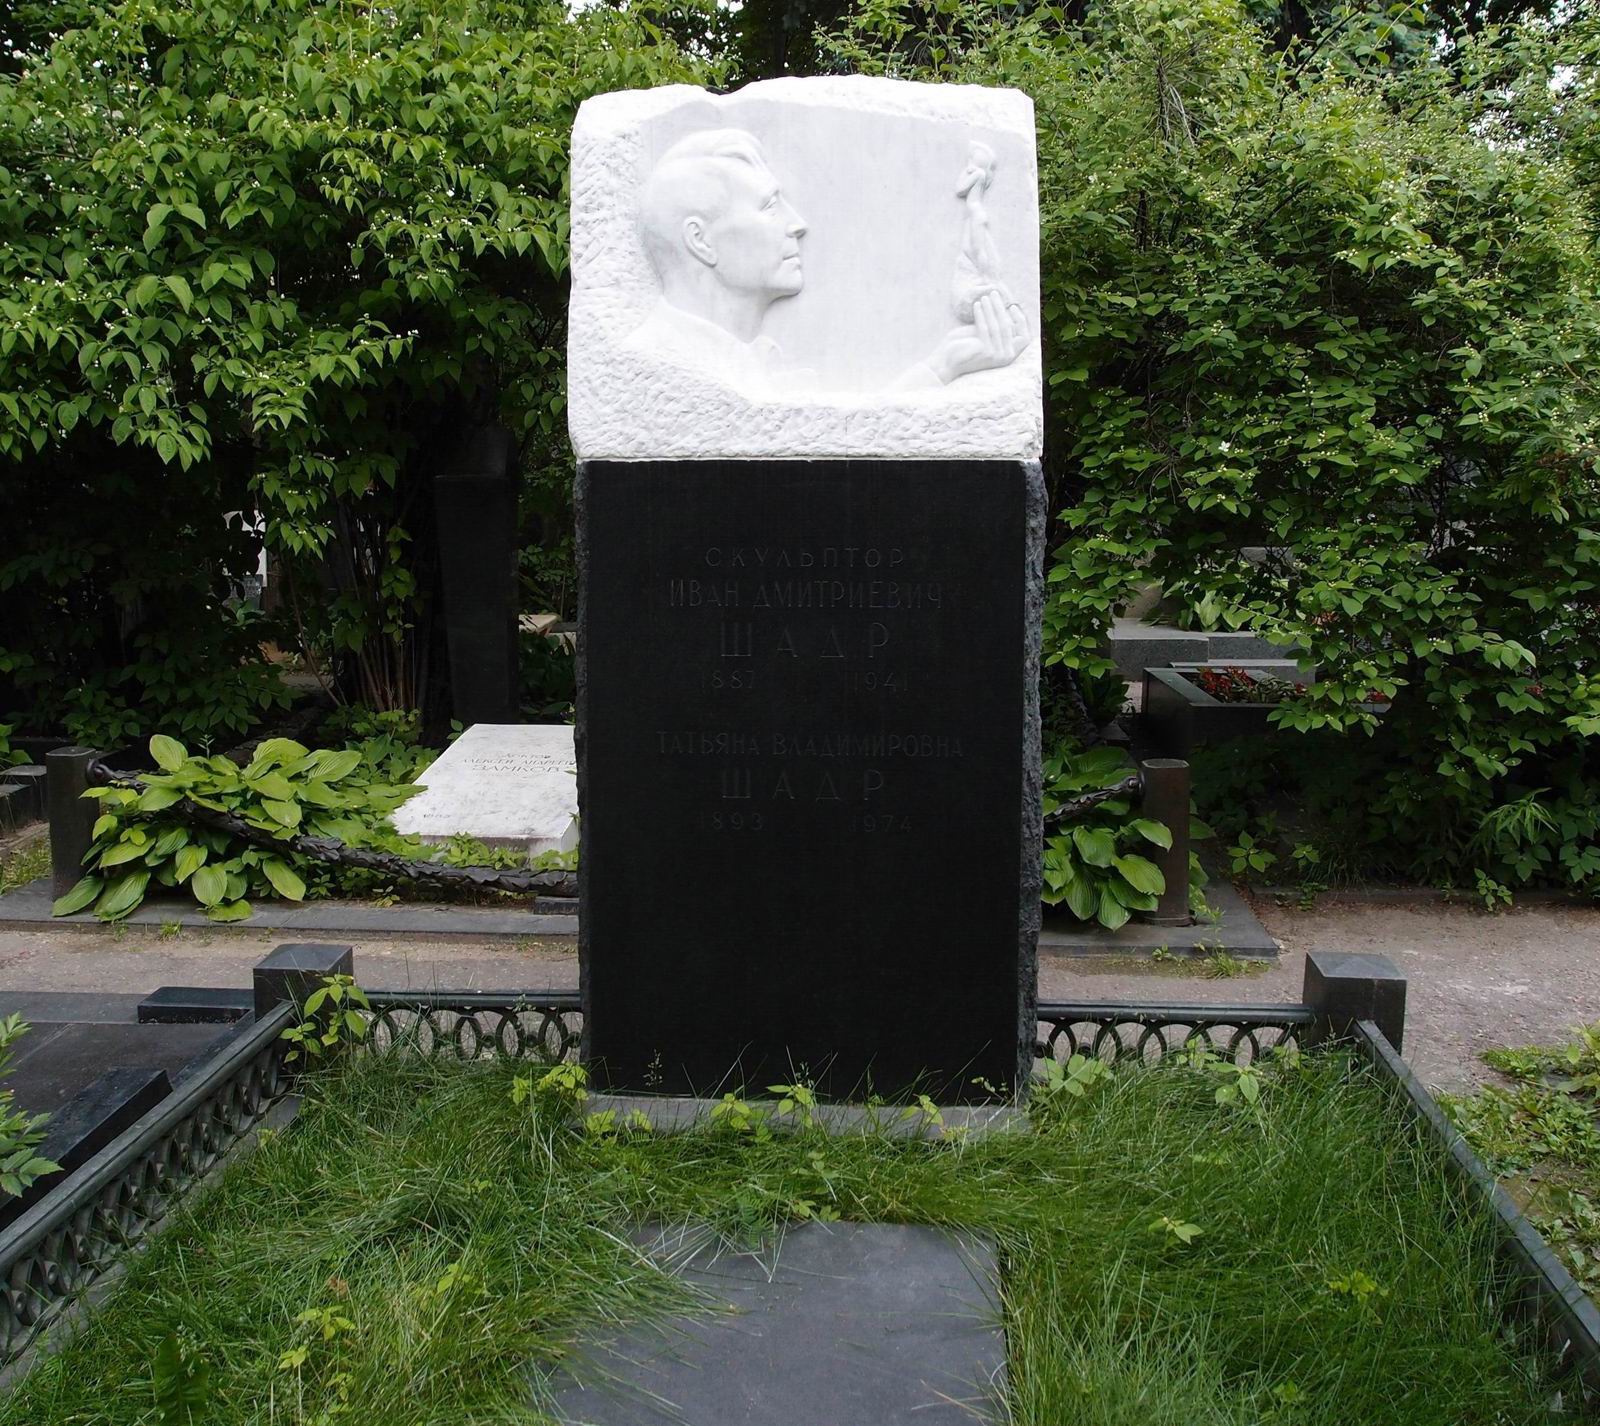 Памятник на могиле Шадра И.Д. (1887-1941), ск. И.Рабинович, арх. Г.Гольц, А.Заварзин, на Новодевичьем кладбище (2-26-15). Нажмите левую кнопку мыши чтобы увидеть фрагмент памятника.